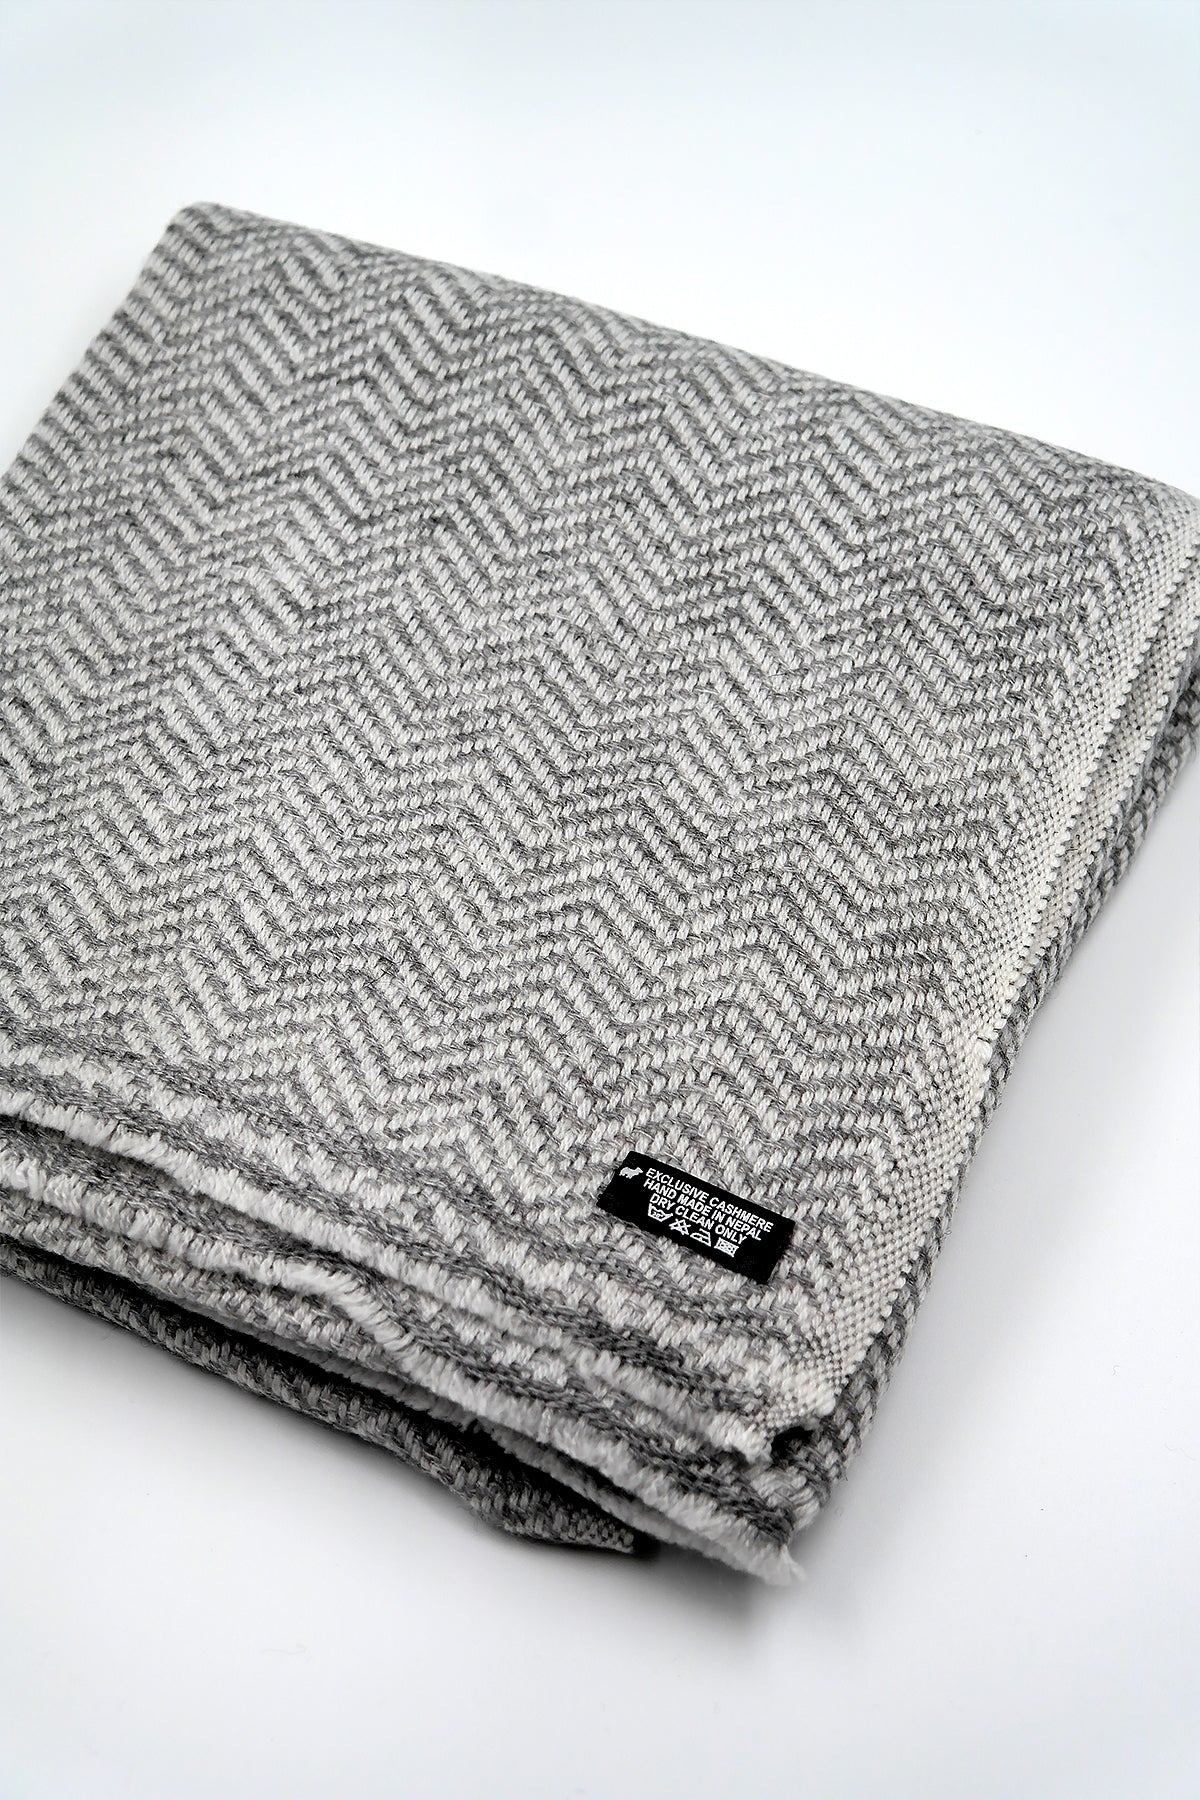 Herringbone Pattern scarf in 100% cashmere